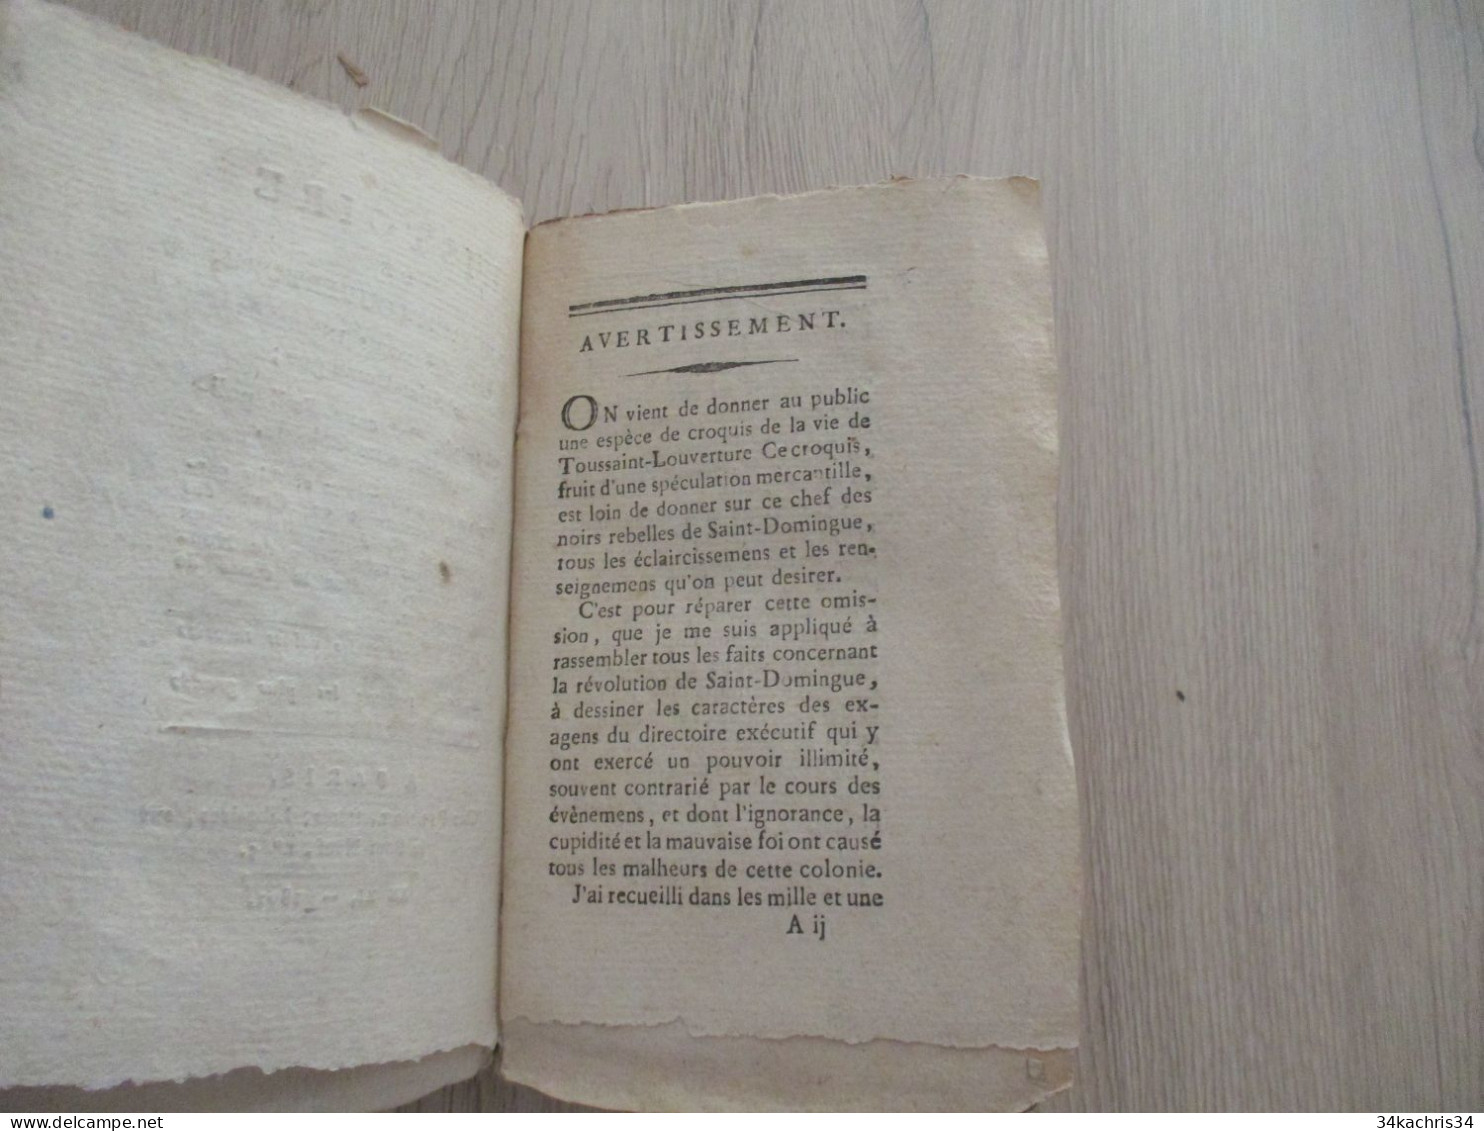 AN XI 1802 Chez Pillot Histoire De Toussaint Louverture Chefs Des Noirs Insurgés De Saint Domingue Colonies Haïti - Biographie